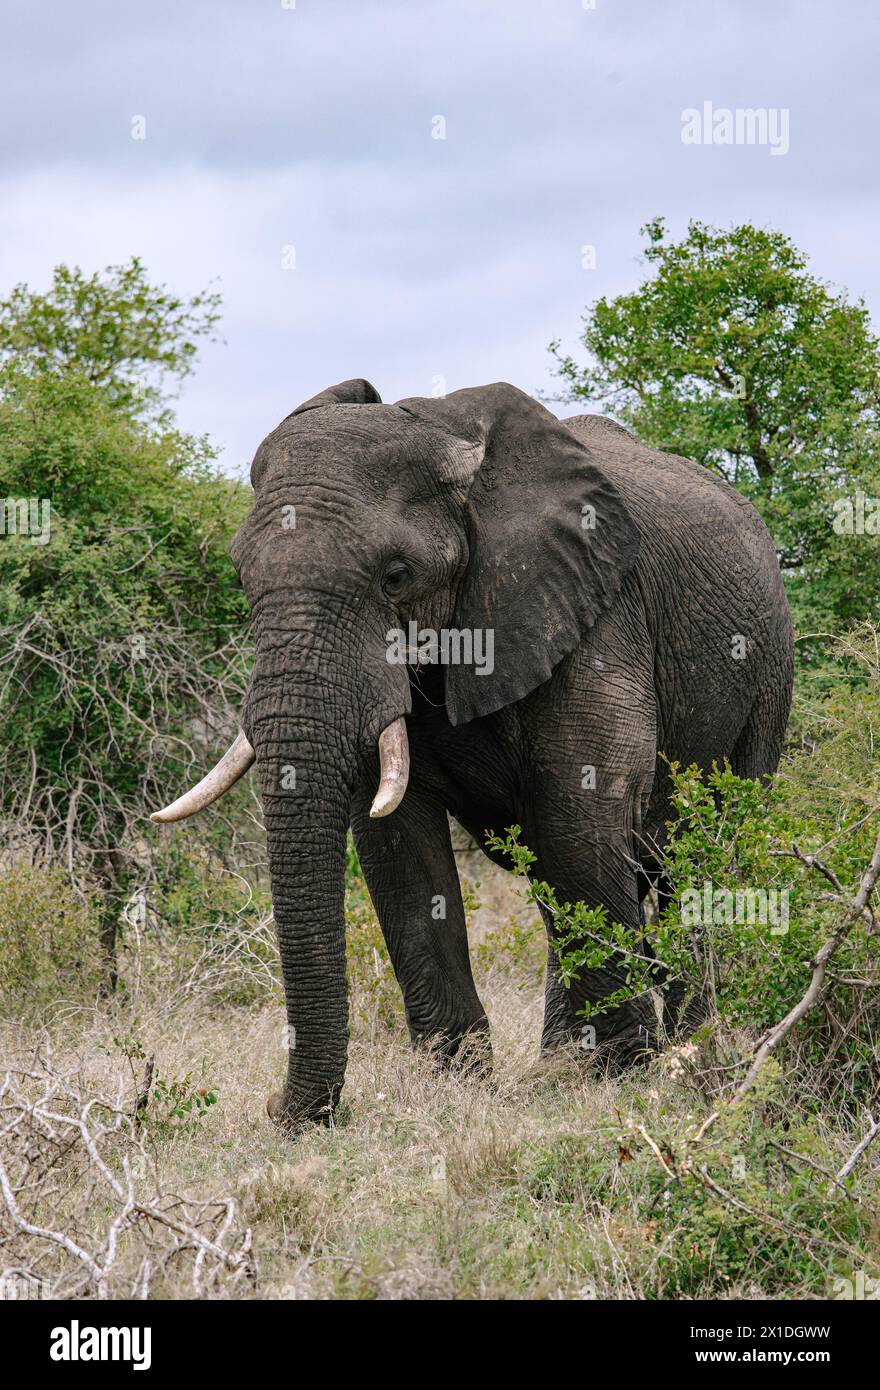 Grand éléphant d'Afrique pleine longueur dans la savane. Safari dans le parc national Kruger, Afrique du Sud. réserve pour la conservation des populations animales. Animaux wi Banque D'Images